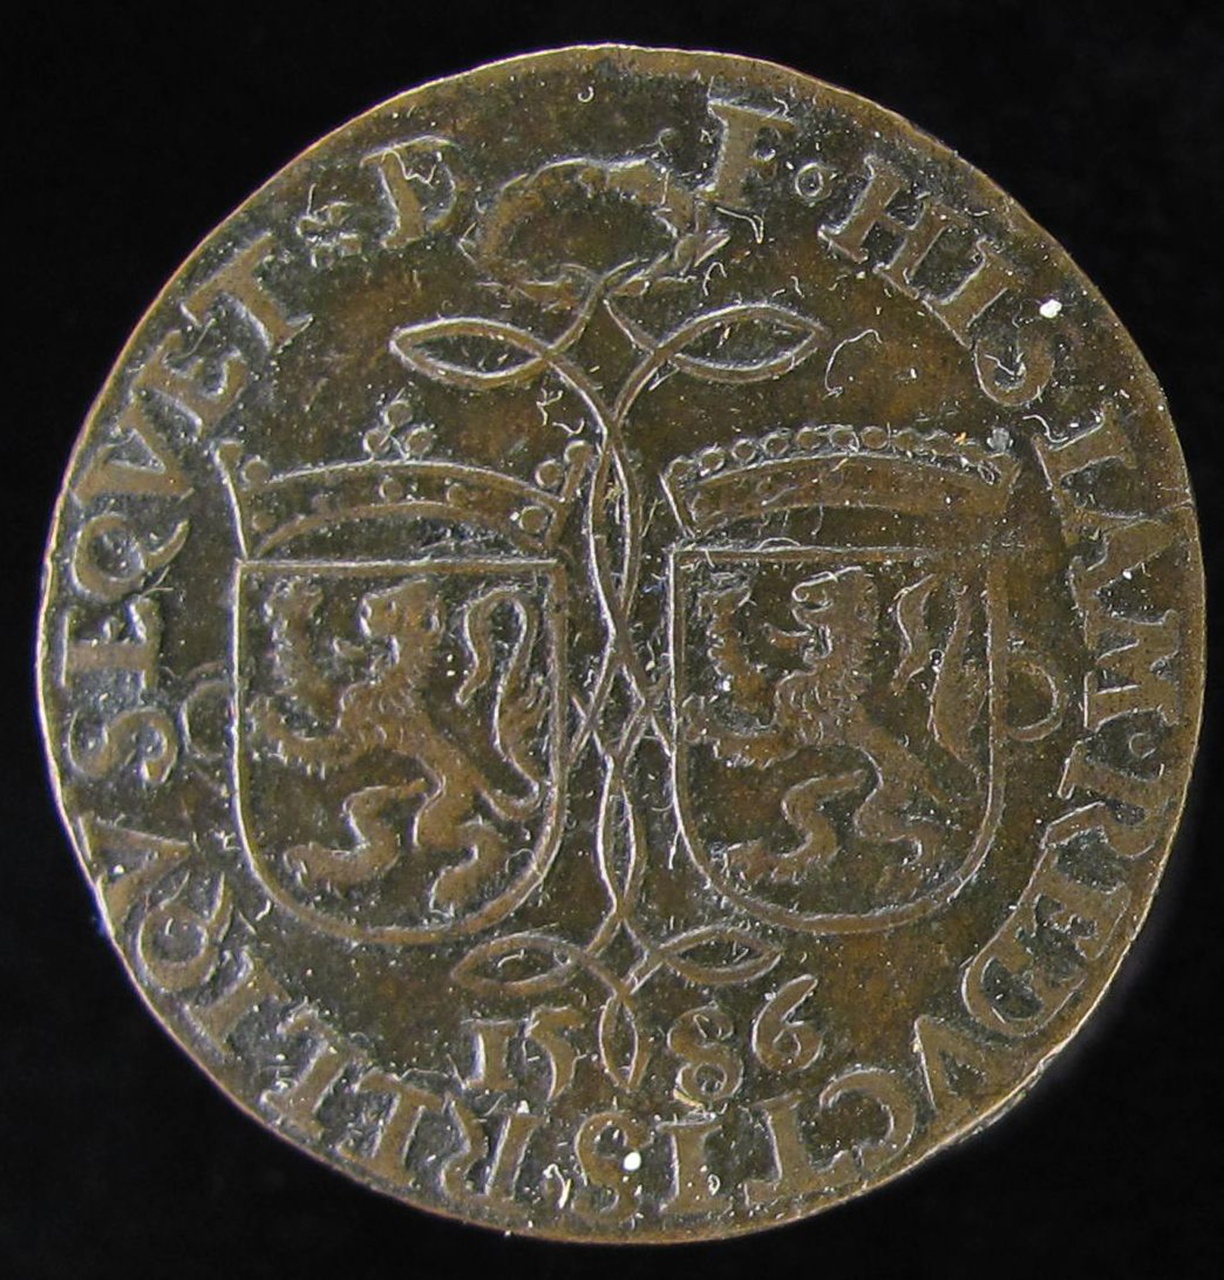 Herinnering aan de verovering van Nuys, 1586